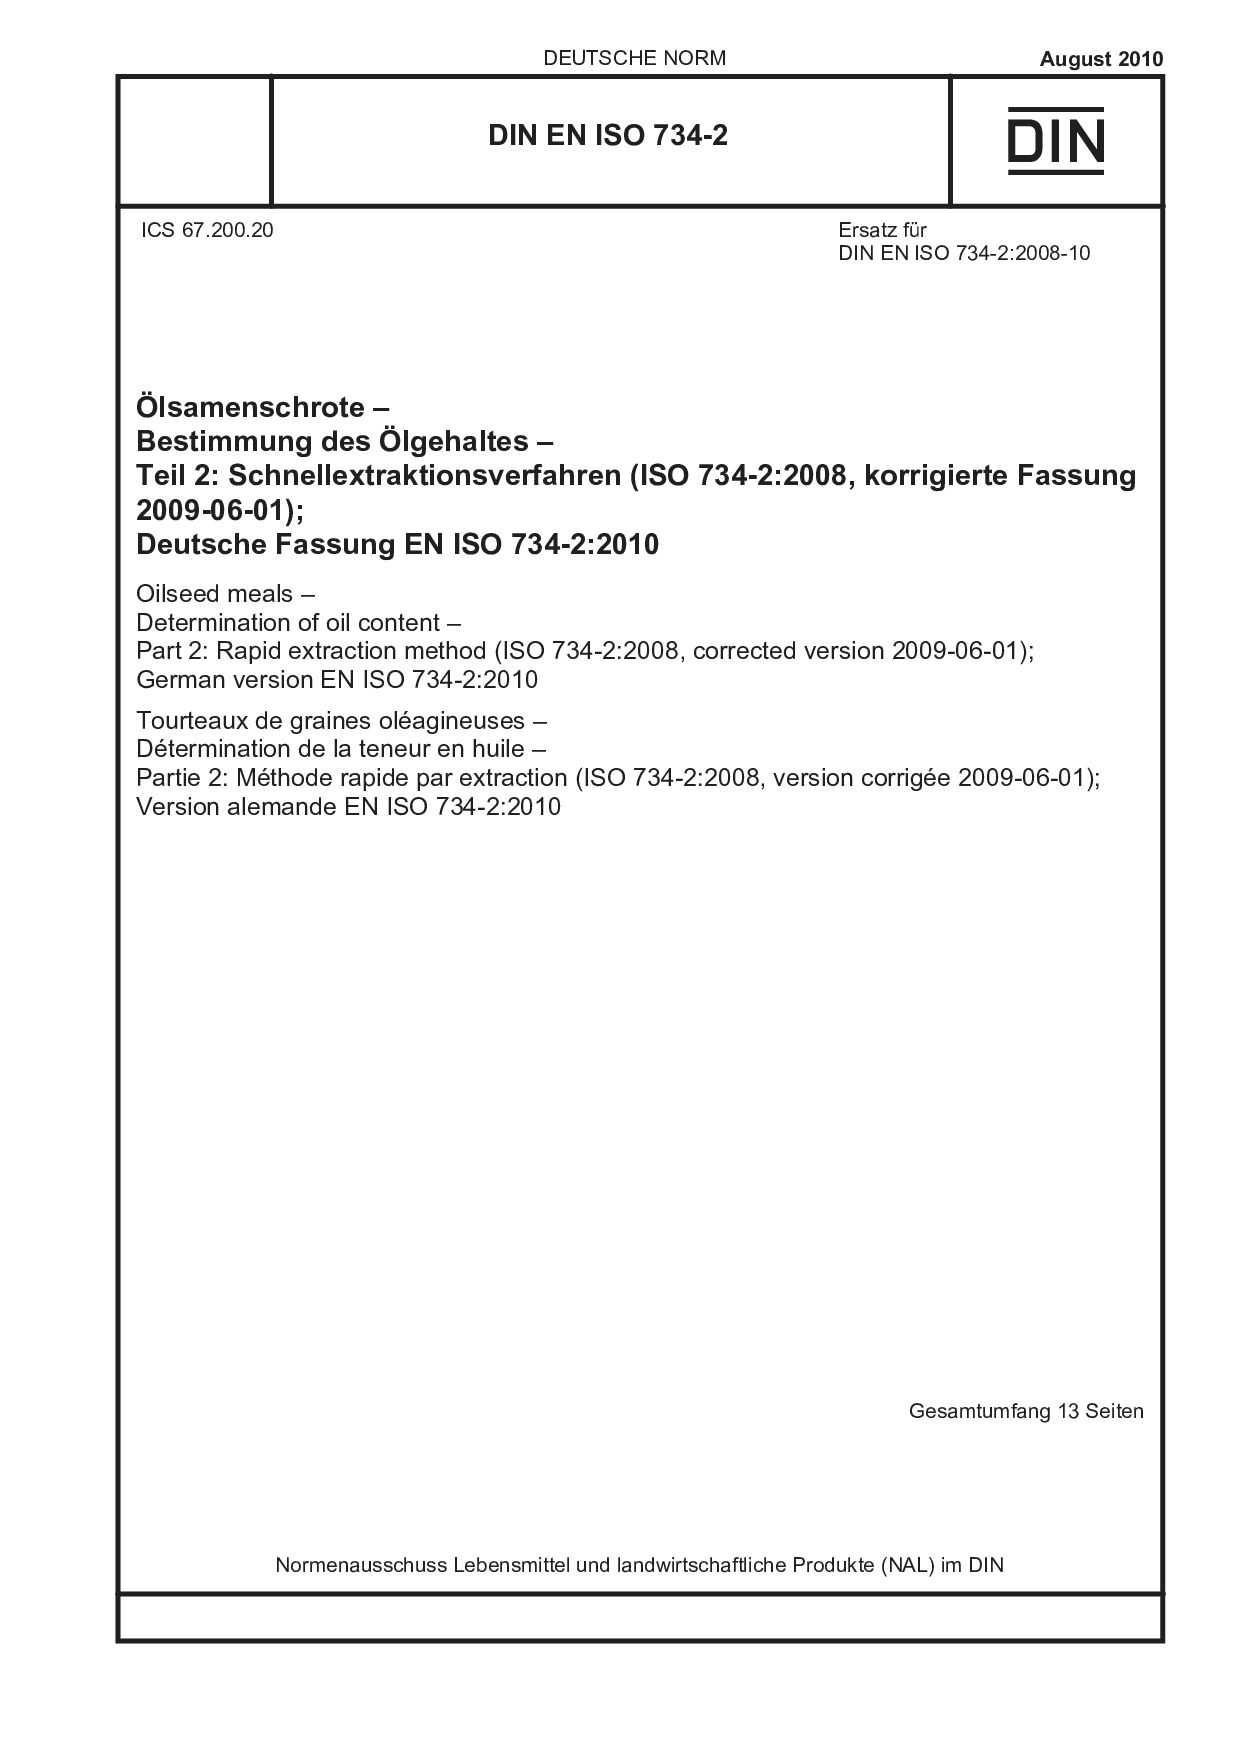 DIN EN ISO 734-2:2010